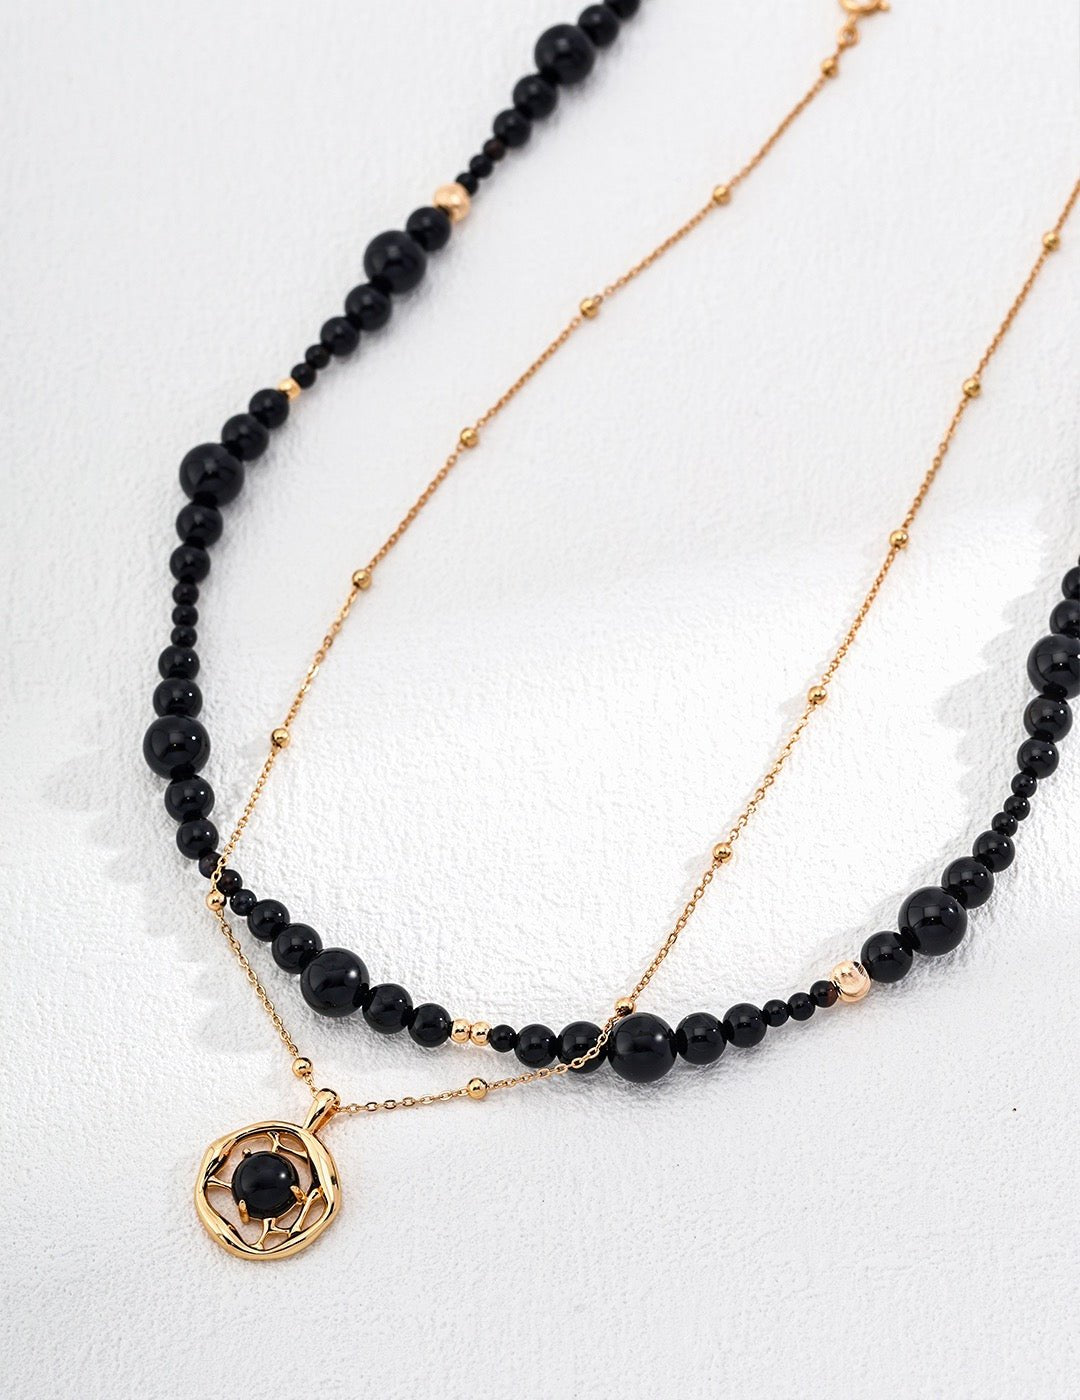 Black Onyx Sterling Silver Bracelet and Necklace sets - Crystal Together